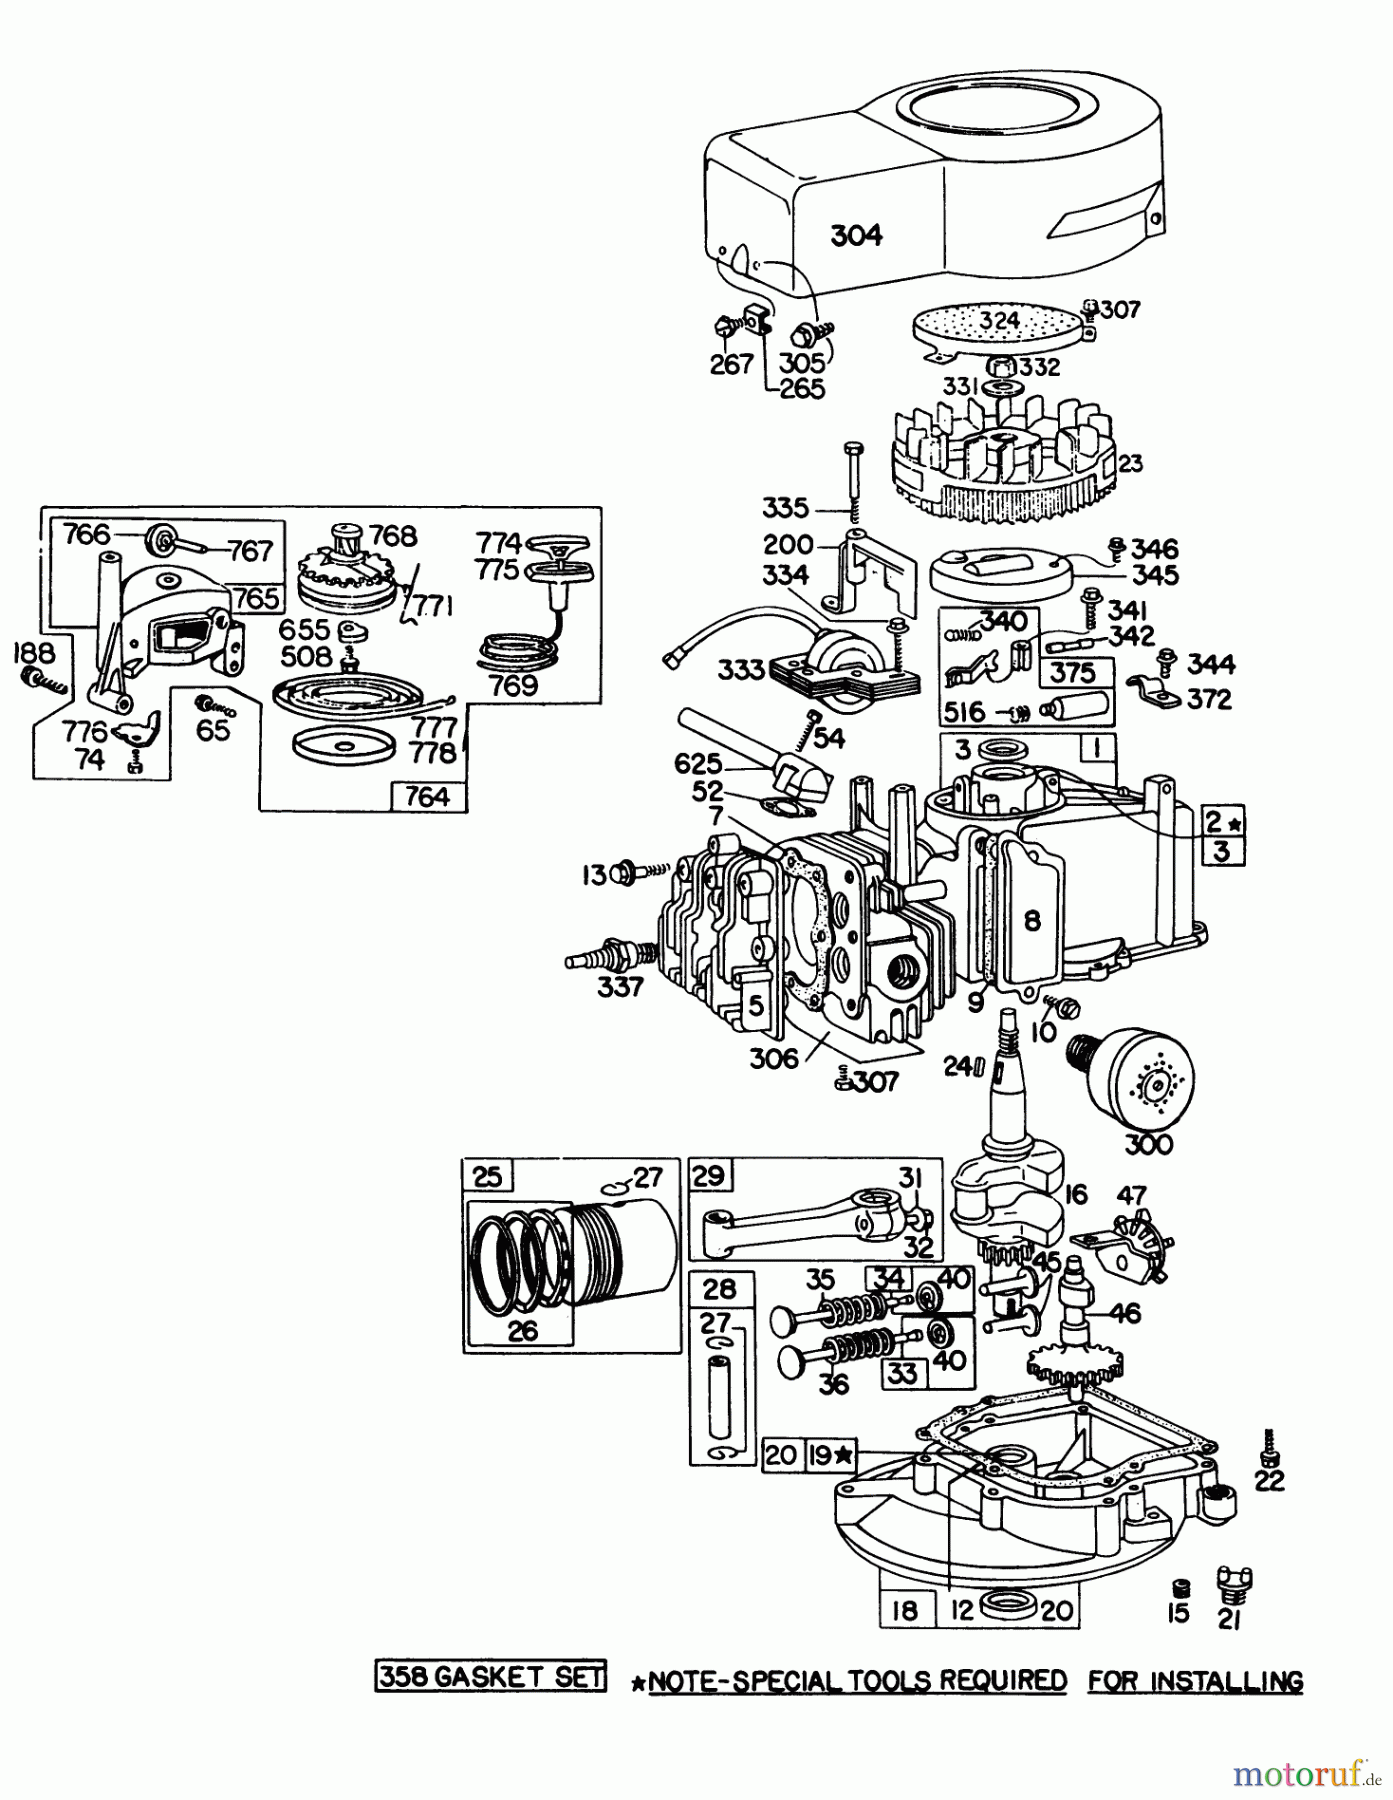  Toro Neu Mowers, Walk-Behind Seite 1 16113 - Toro Whirlwind II Lawnmower, 1978 (8000001-8999999) ENGINE BRIGGS & STRATTON MODEL 92908-1743-01 FOR 21